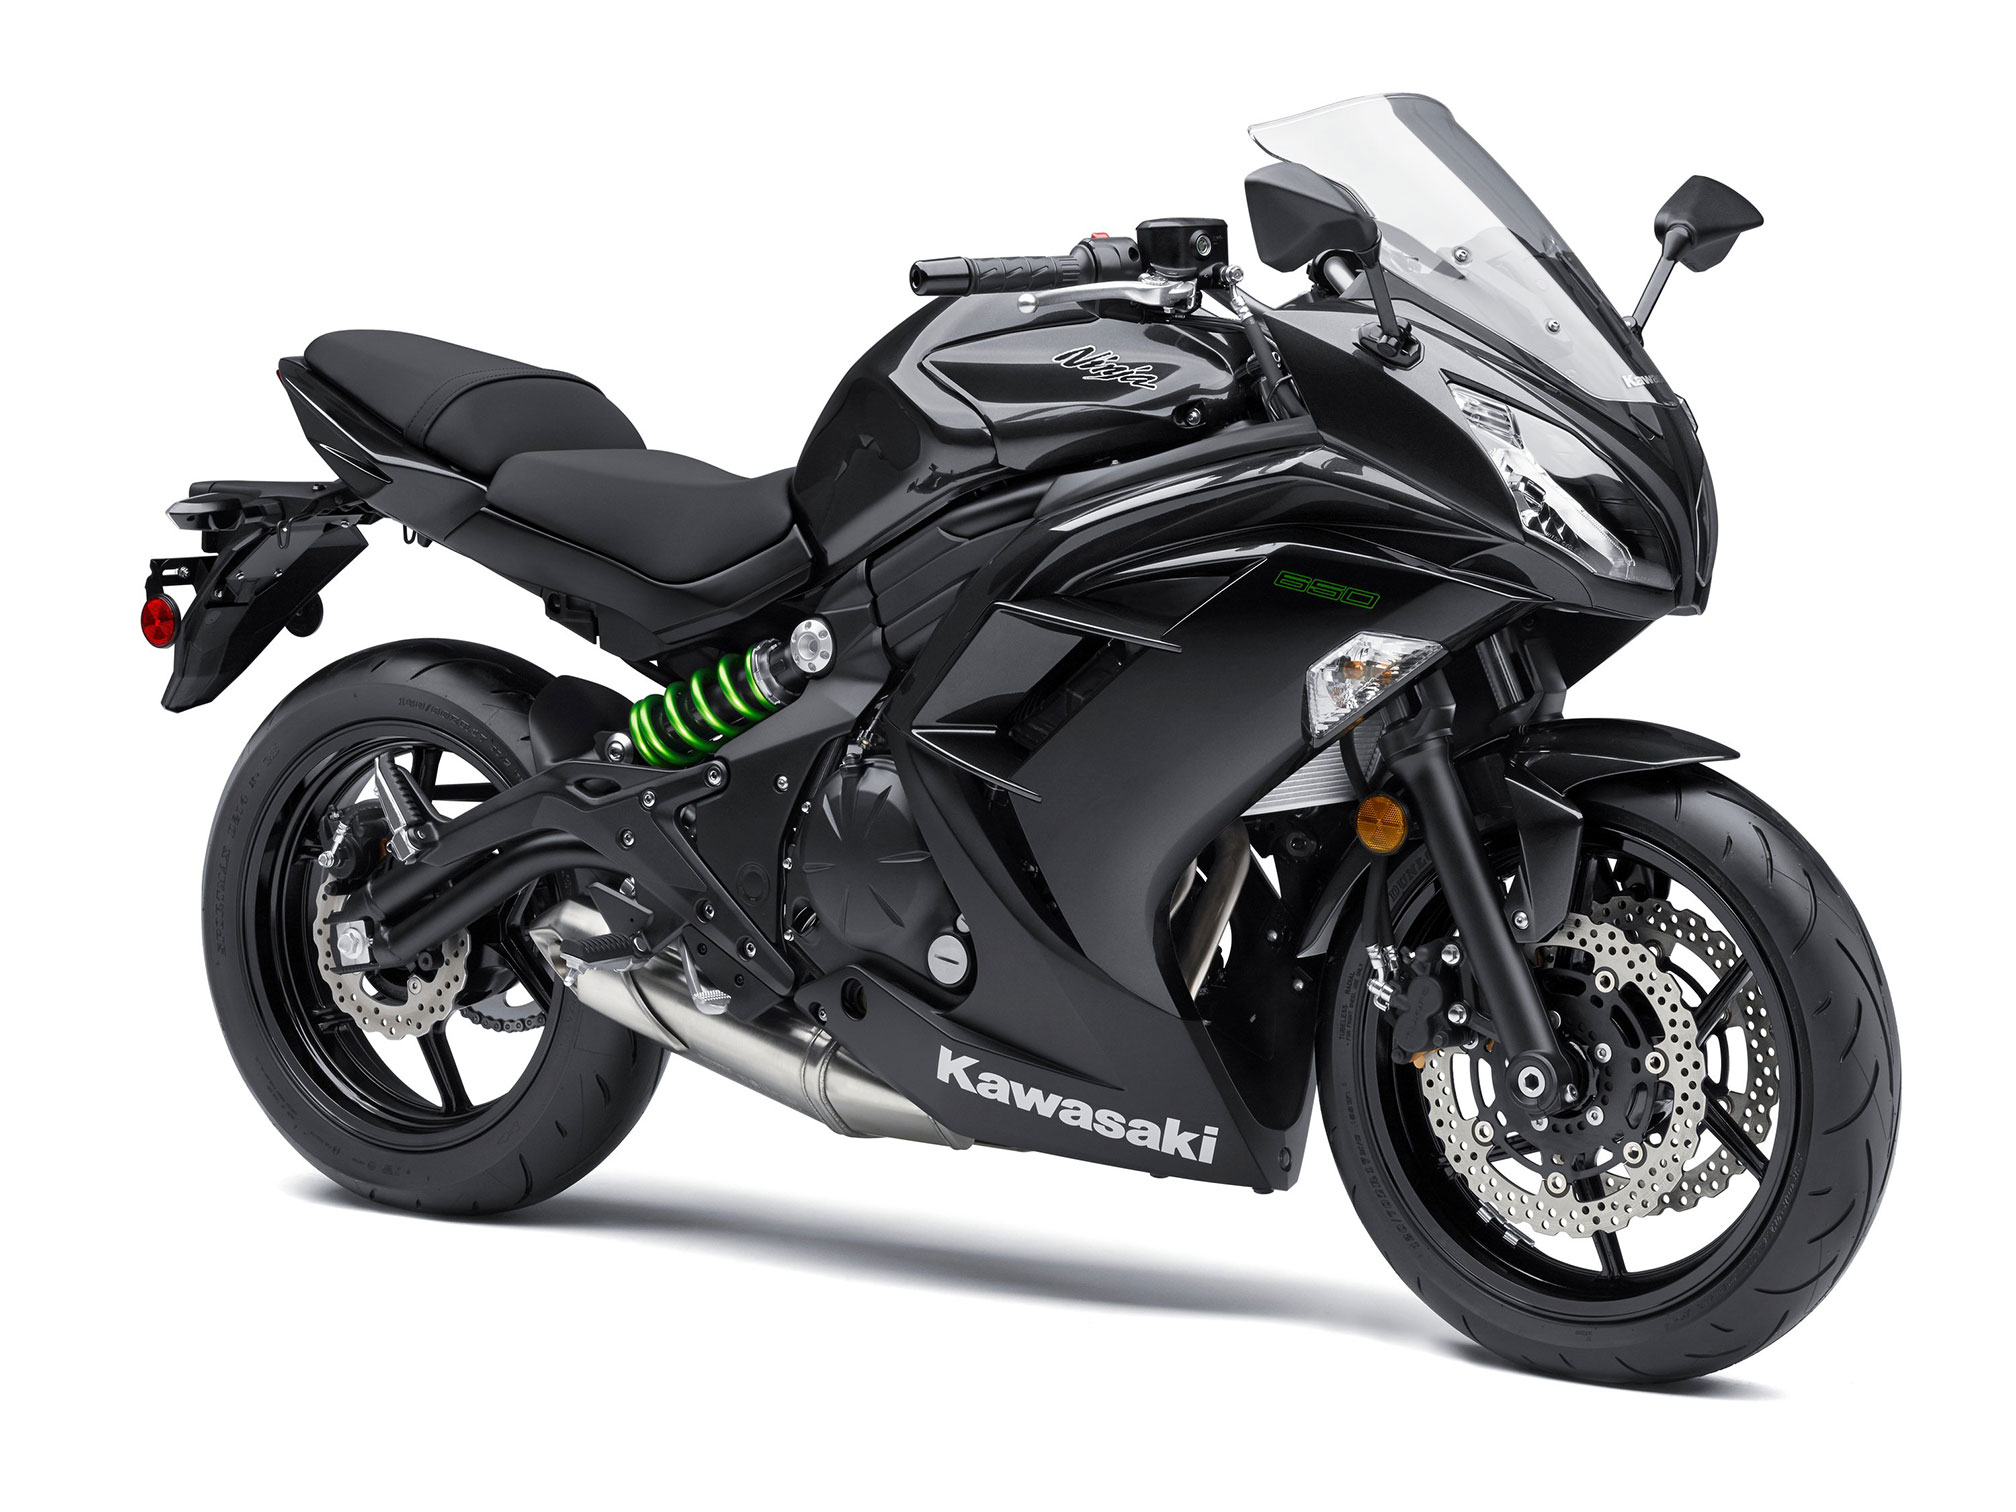 2015 Kawasaki Ninja 650 ABS Review - Top Speed